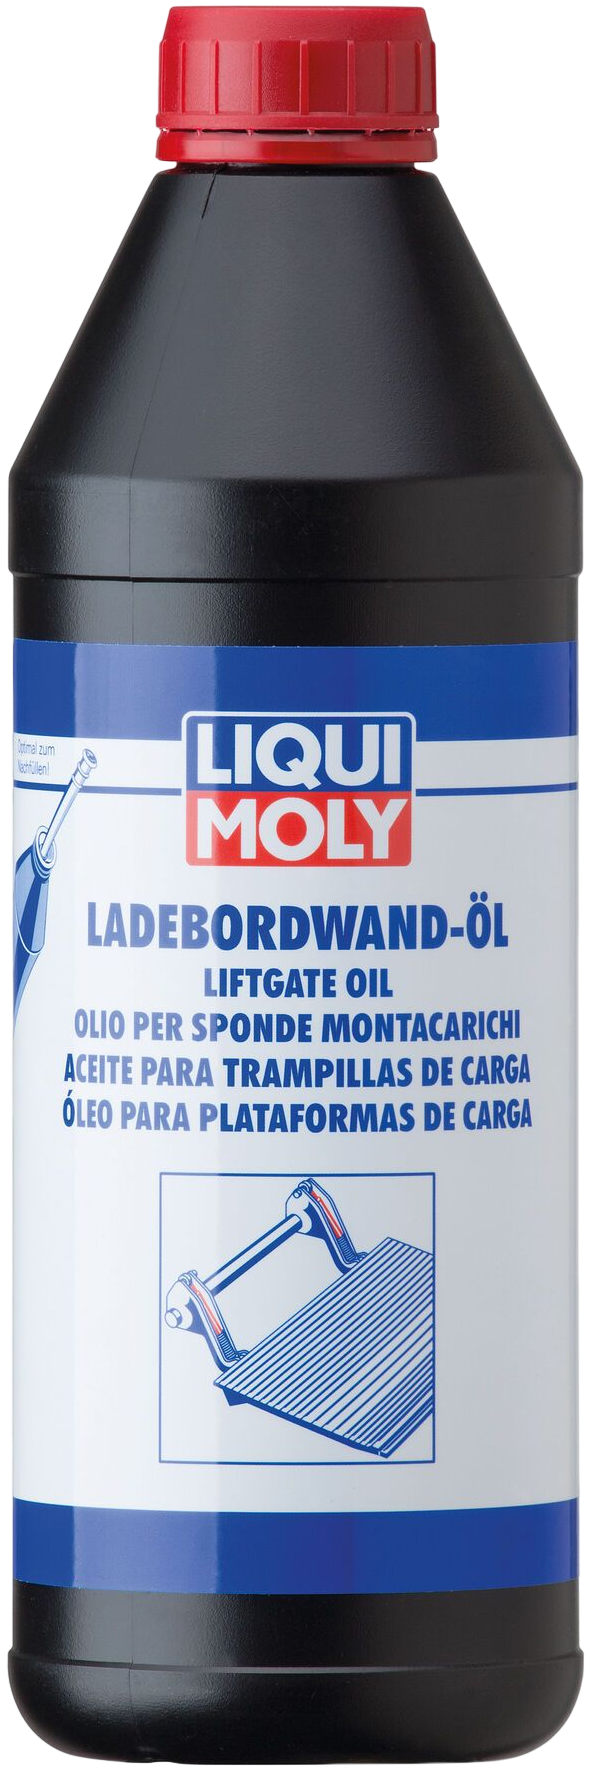 Liqui Moly Laadklepolie, 1 lt